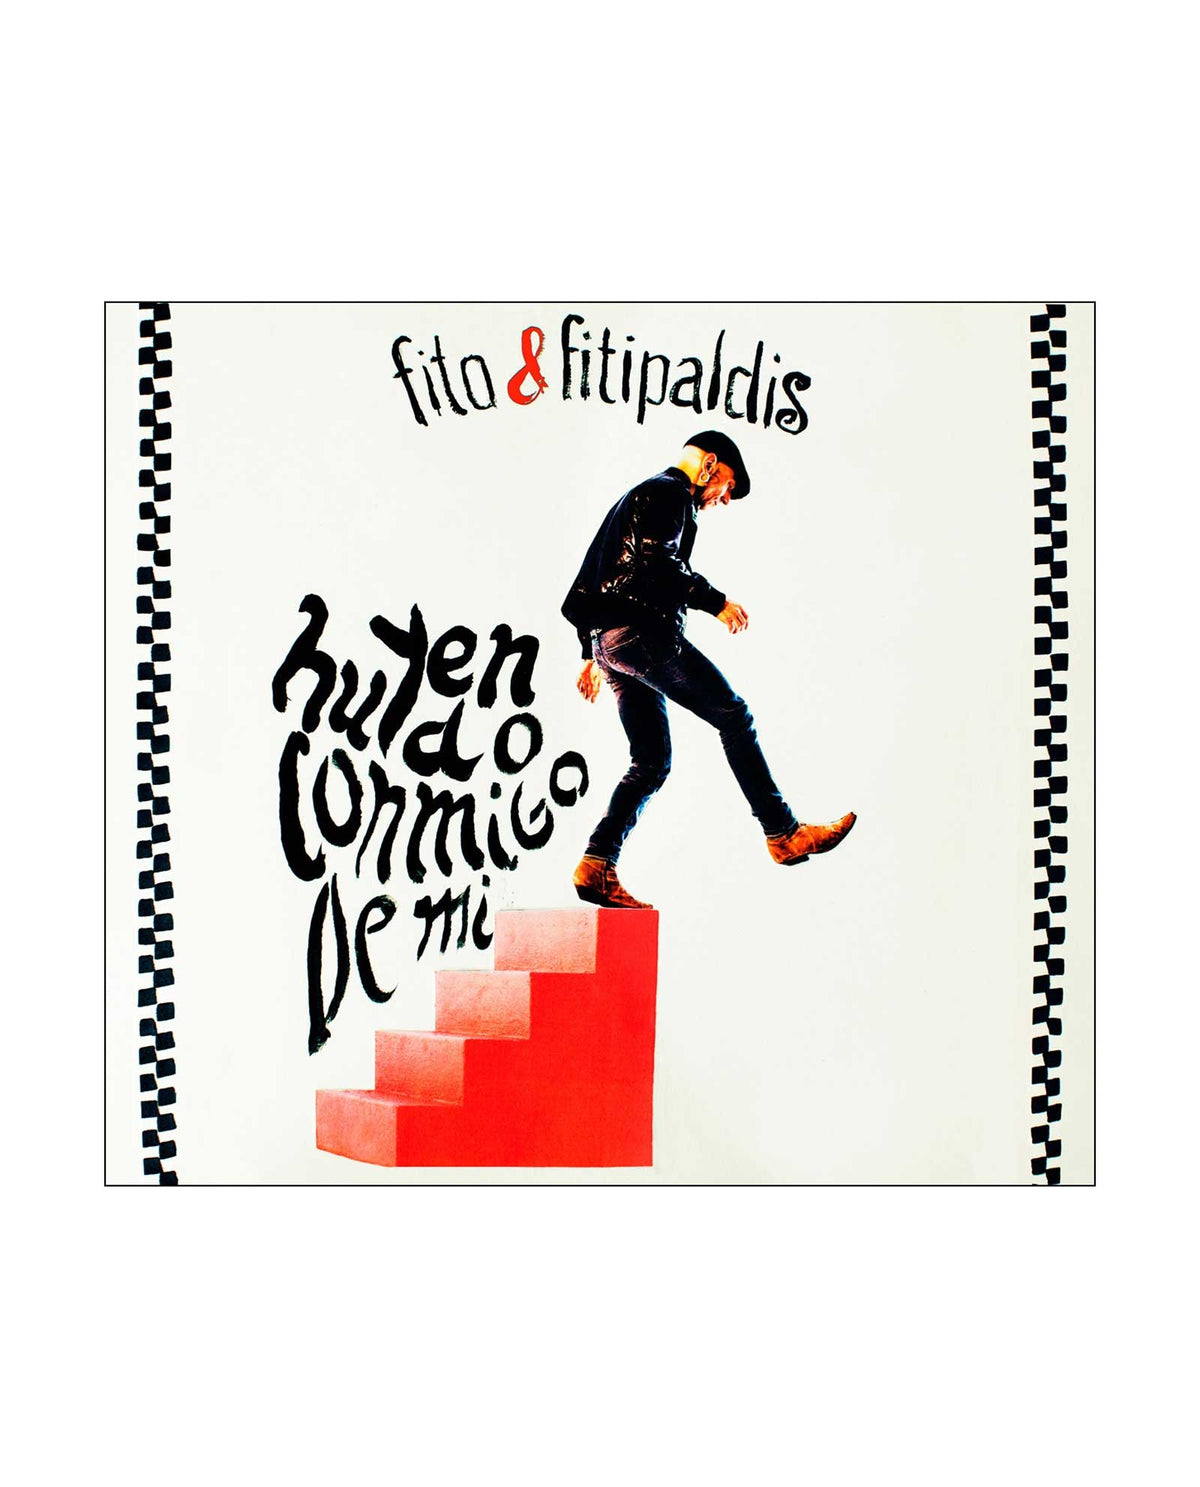 VINILO + CD Fito & Fitipaldis Huyendo conmigo de mí - Rocktud - Fito y Fitipaldis